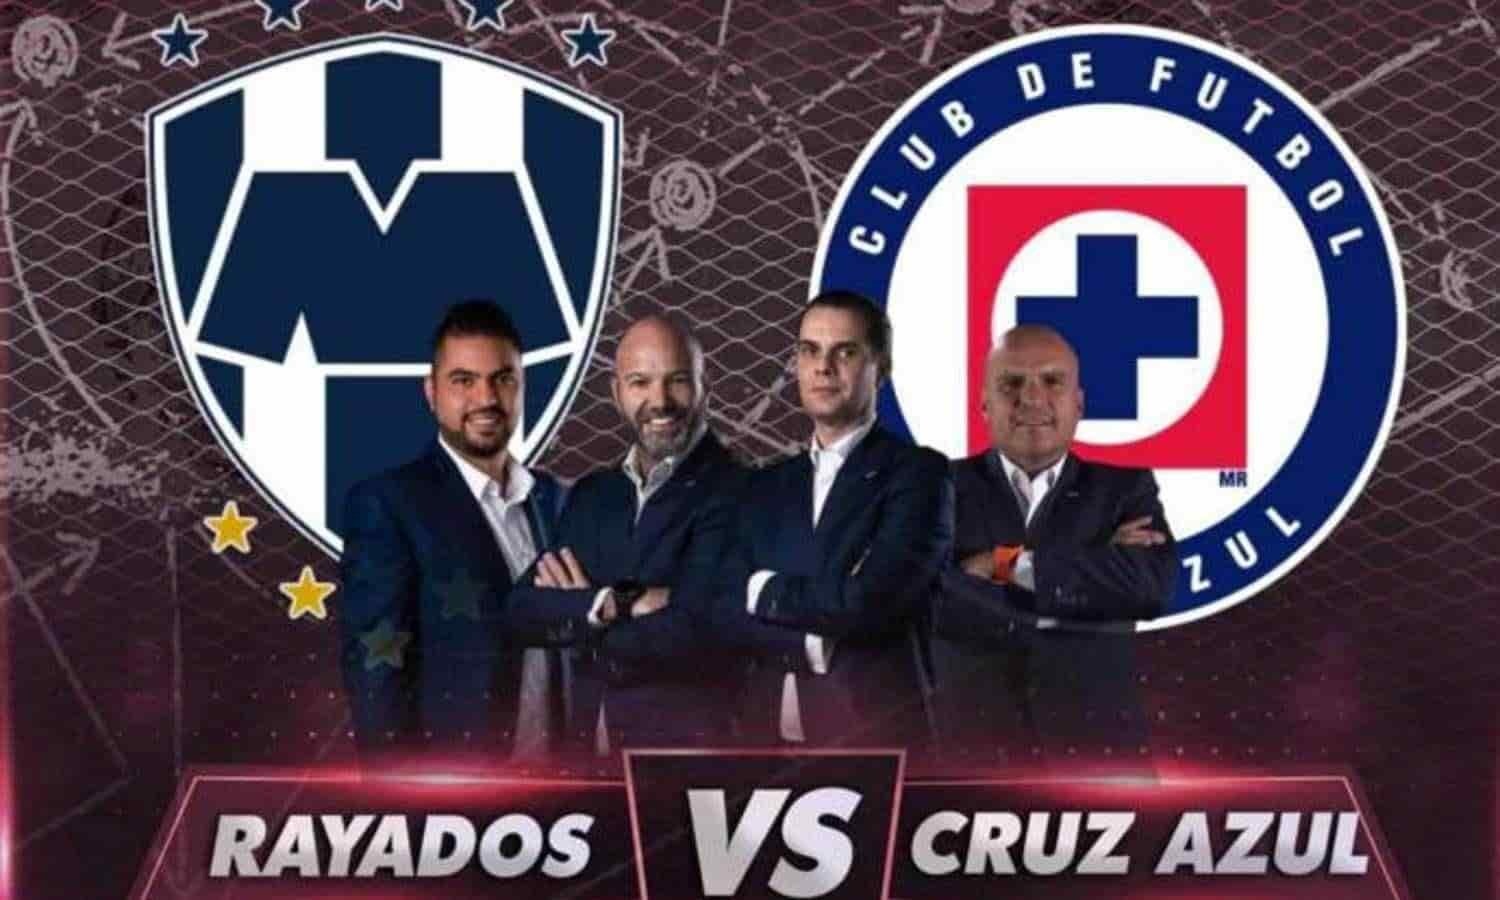 Vuelve Rayados a la televisión abierta con TV Azteca